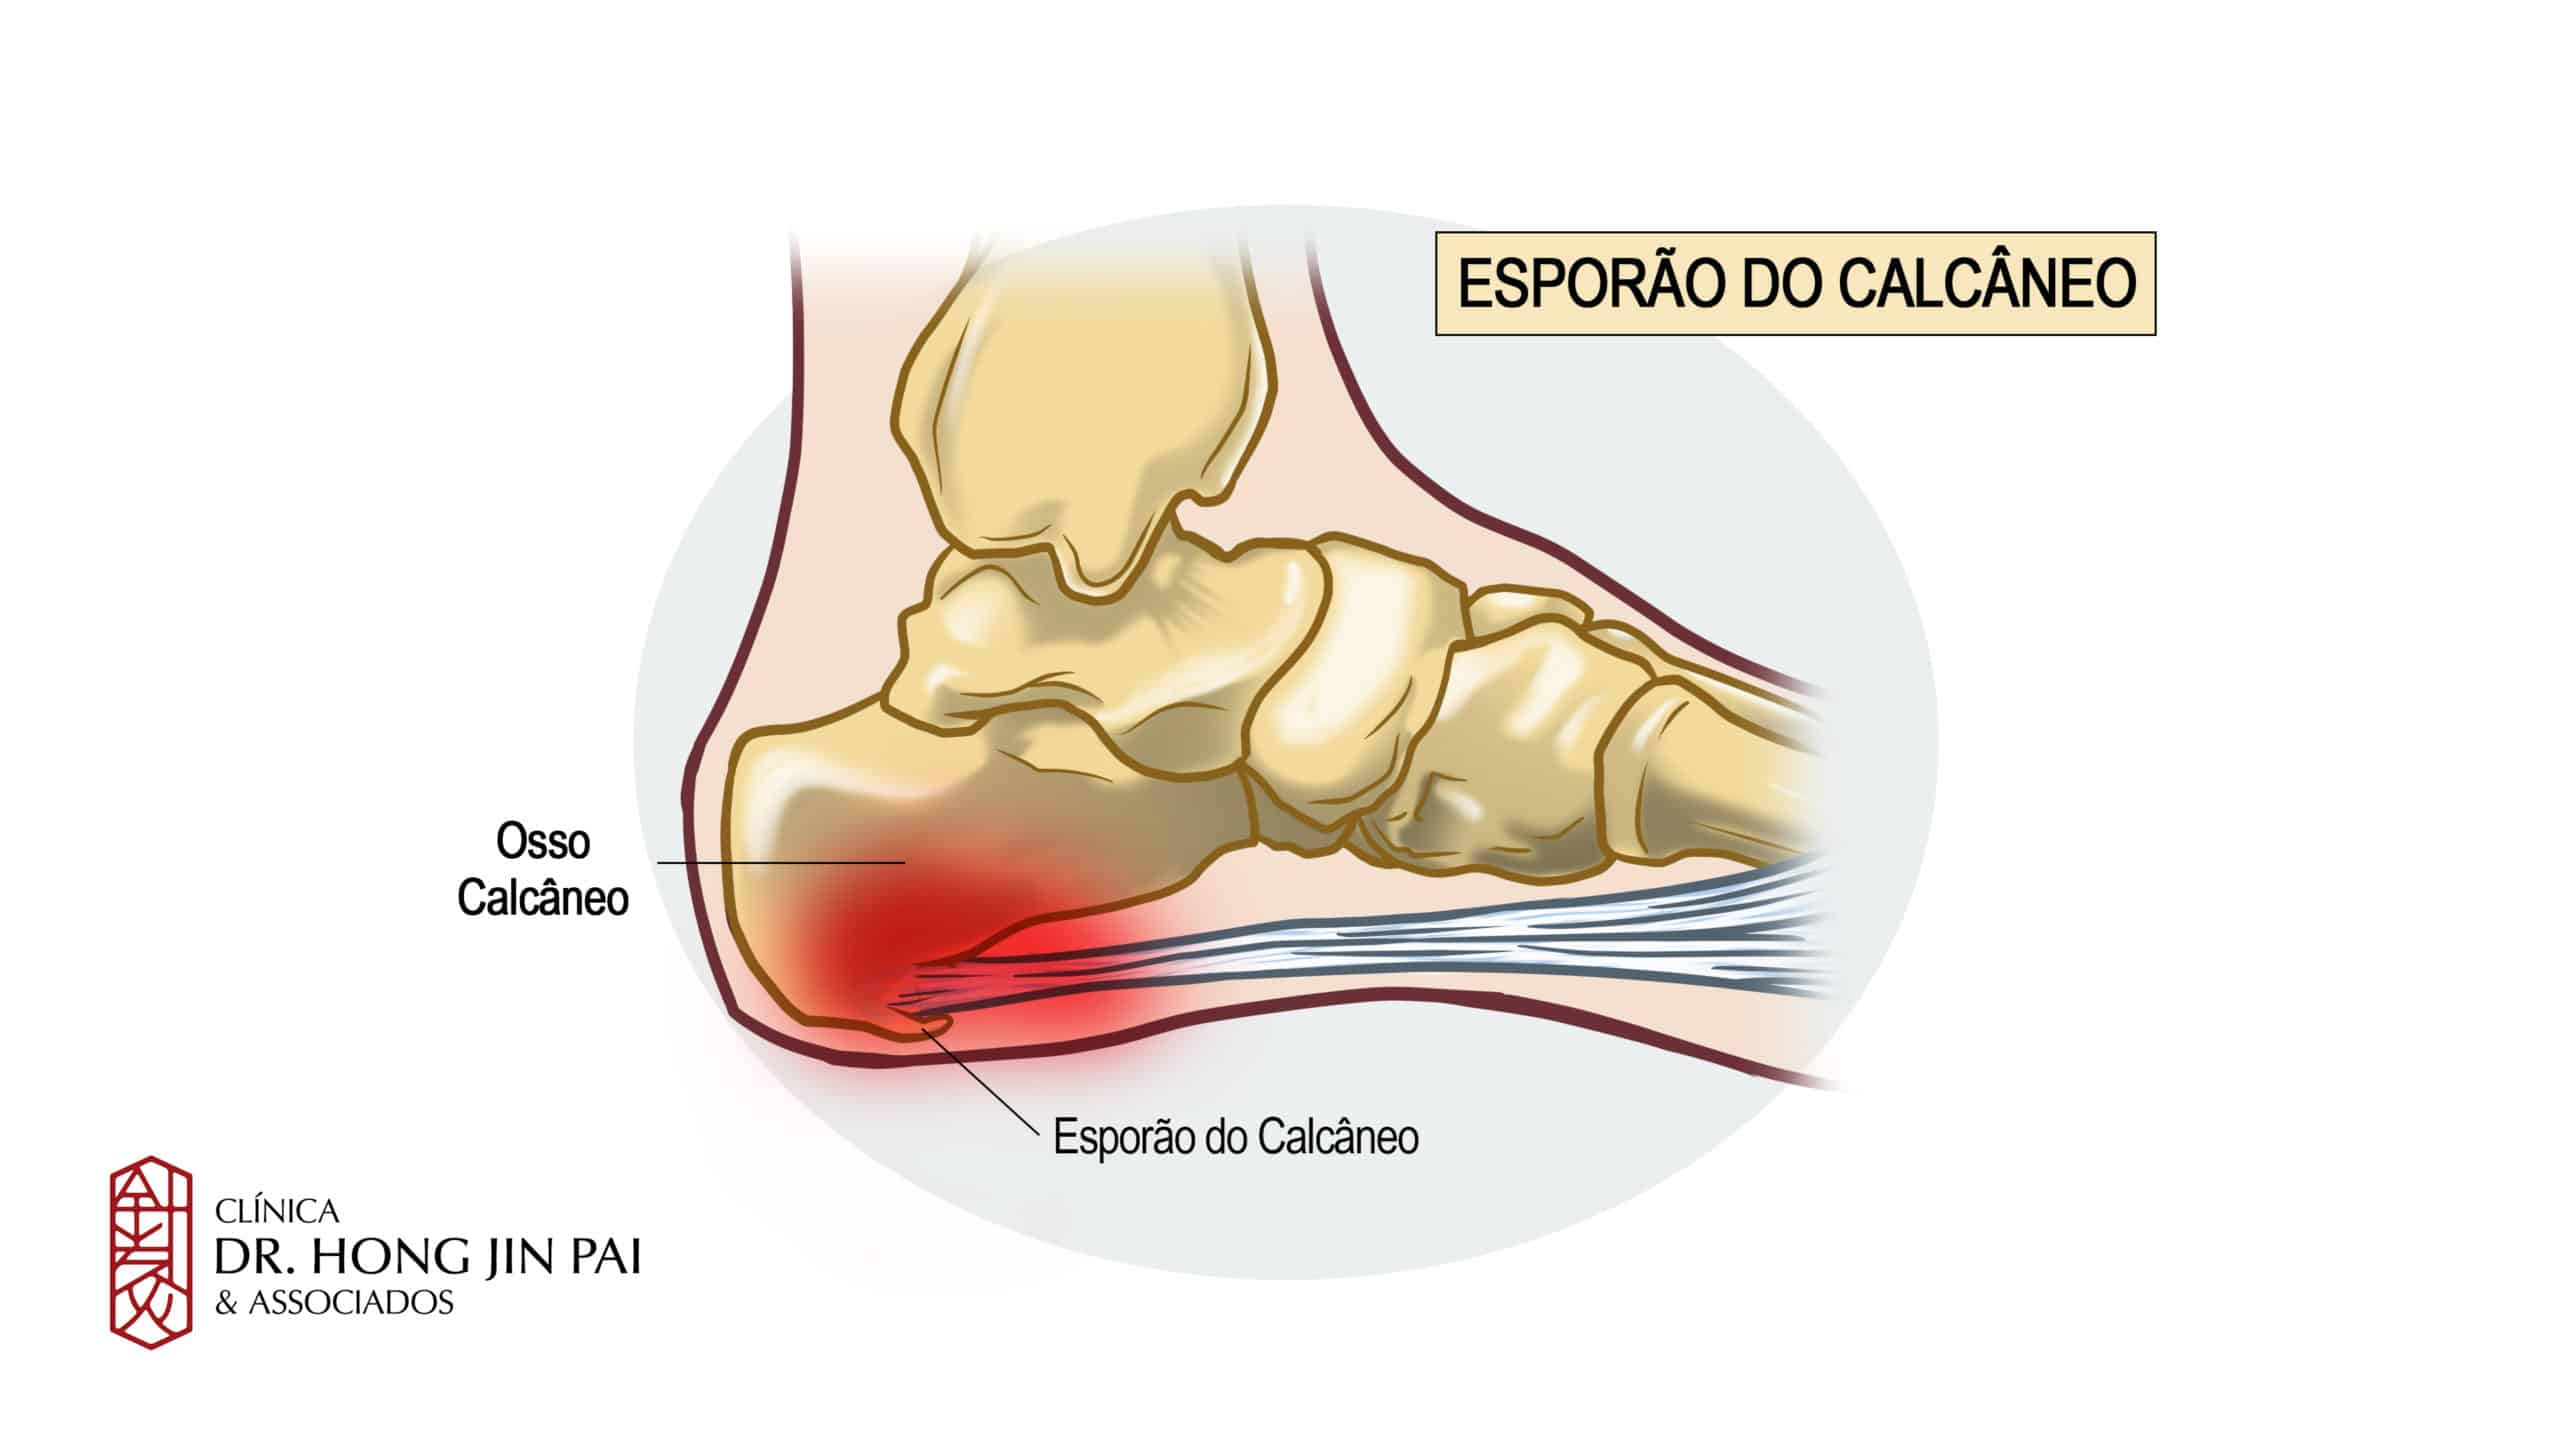 O esporão do calcâneo é resultado do crescimento anormal de uma parte do osso do calcanhar. Pode causar dor muito forte